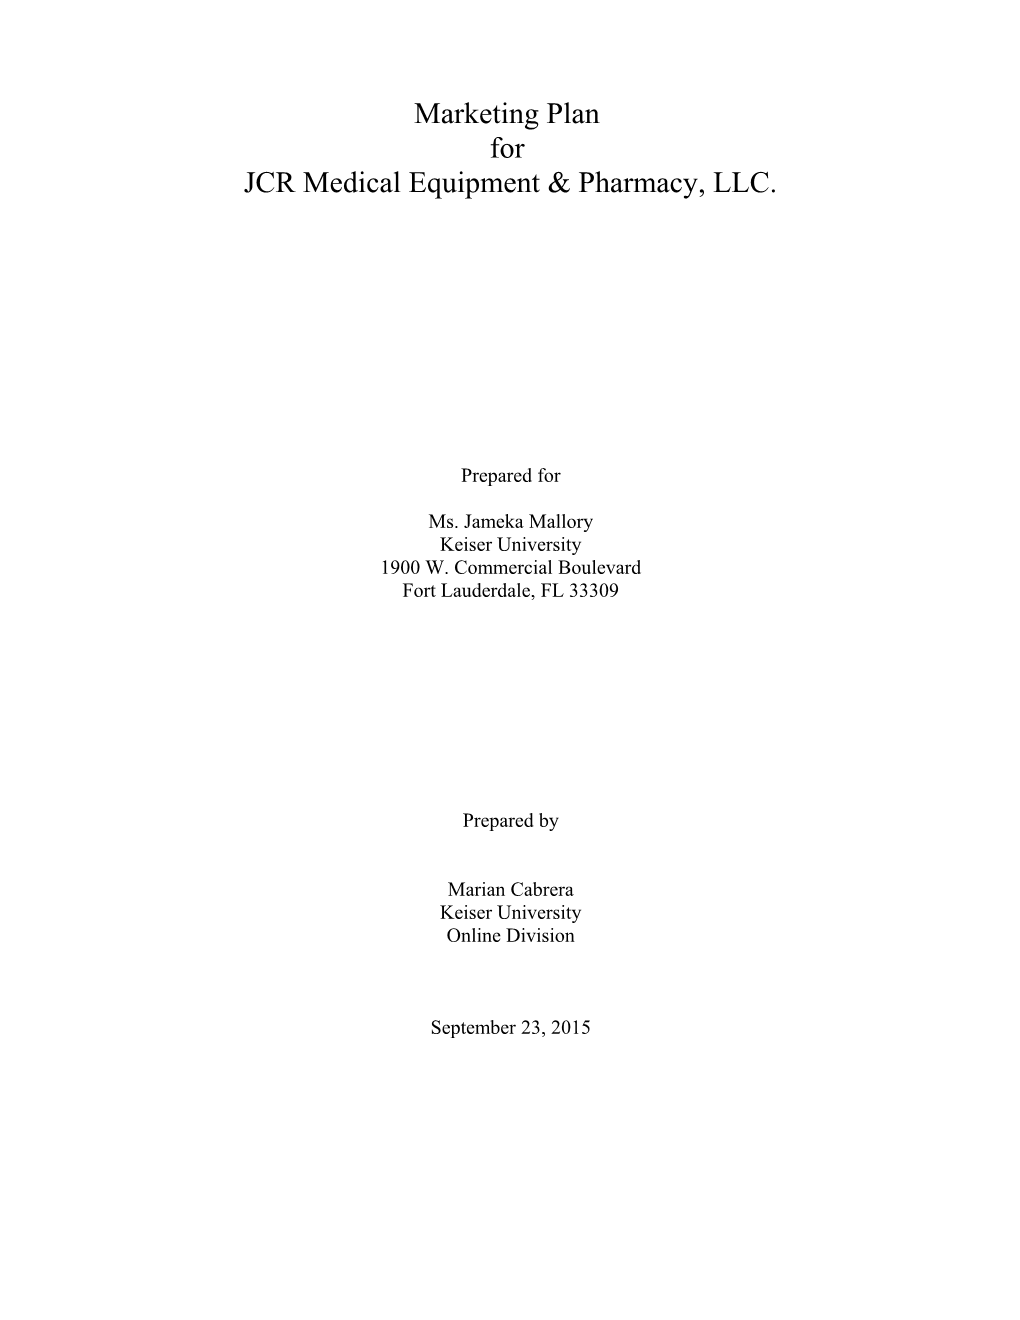 JCR Medical Equipment & Pharmacy, LLC